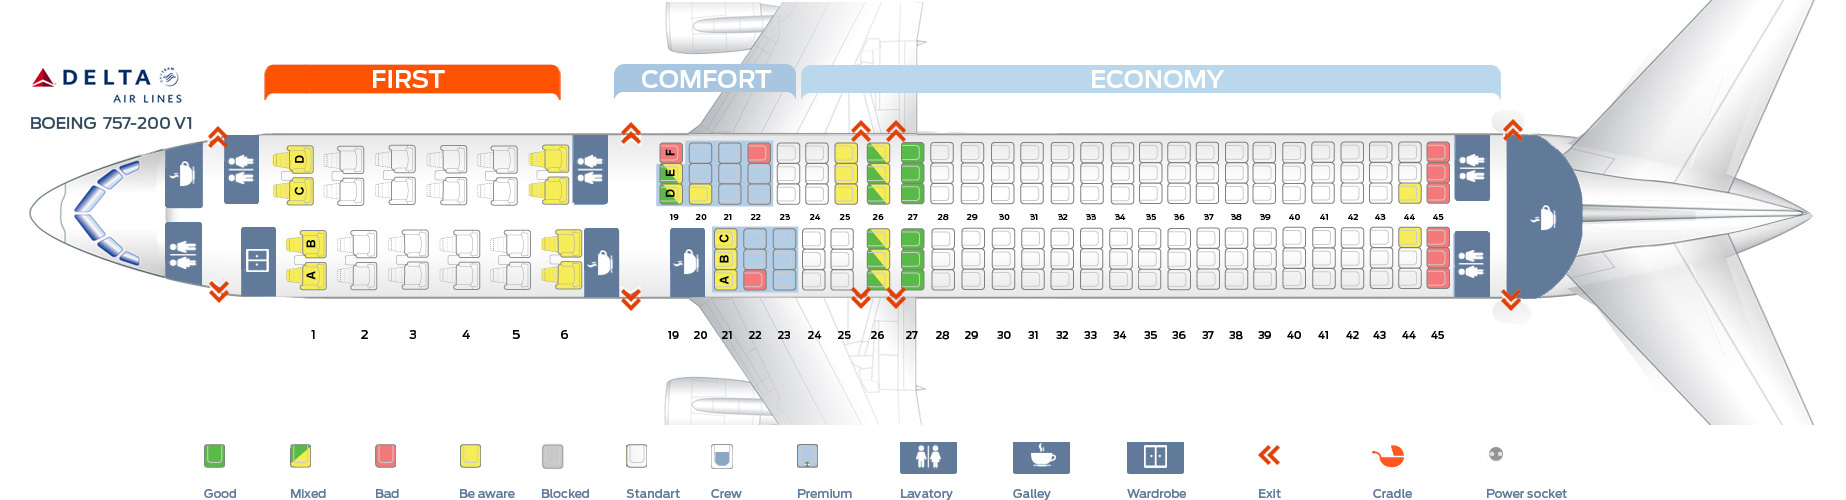 757 Aircraft Seating Chart